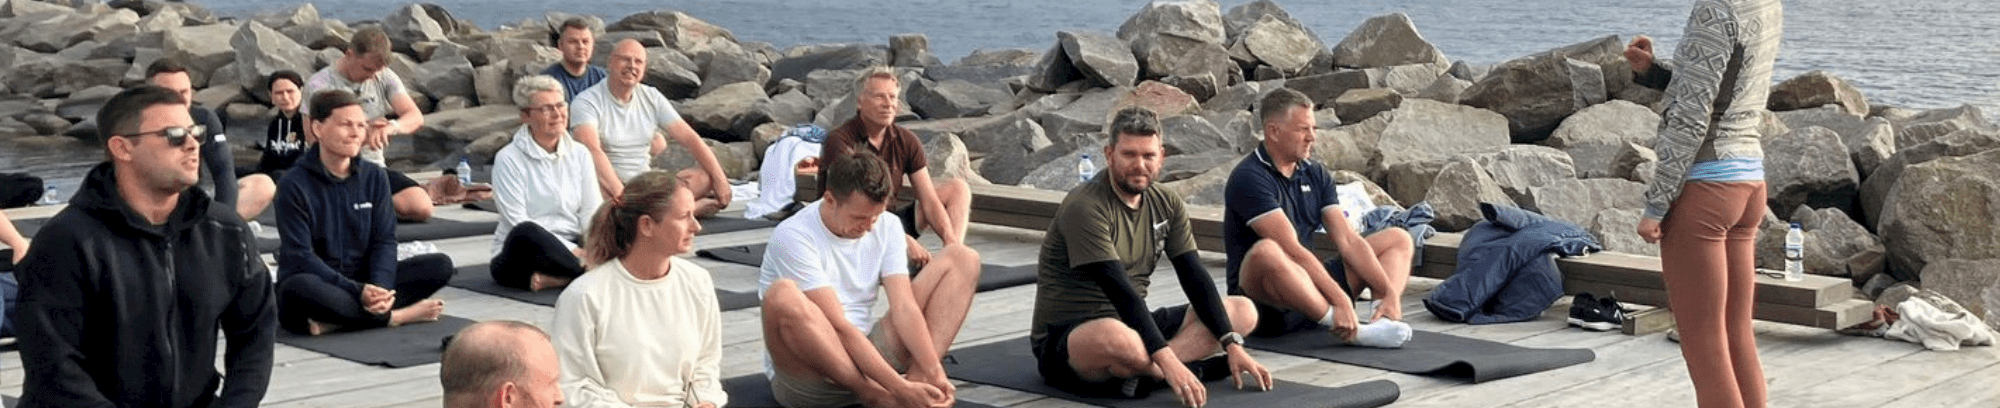 Tag med til en fantastisk yoga-retreat i Allinge på Bornholm og dyrk yoga i naturskønne omgivelser